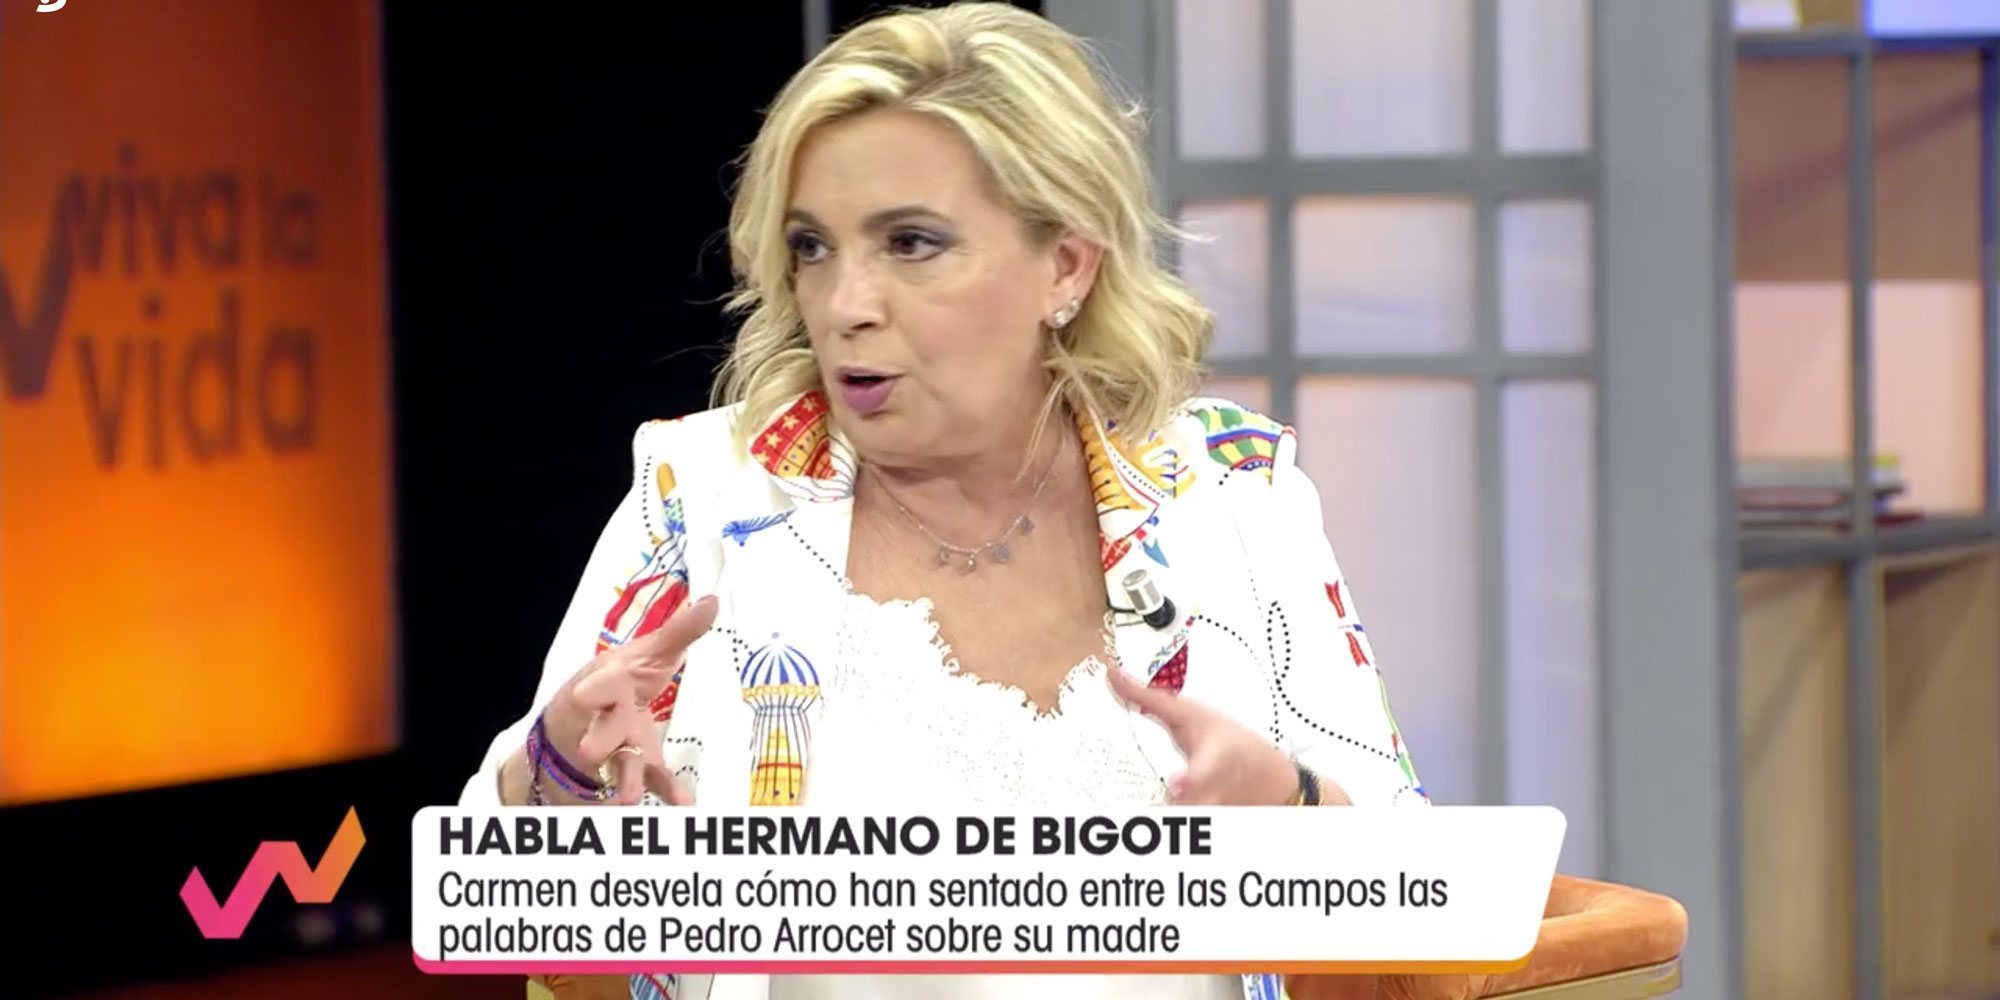 Carmen Borrego opina sobre la relación de María Teresa y Edmundo: "Creo que mi madre no ha sido tan feliz"